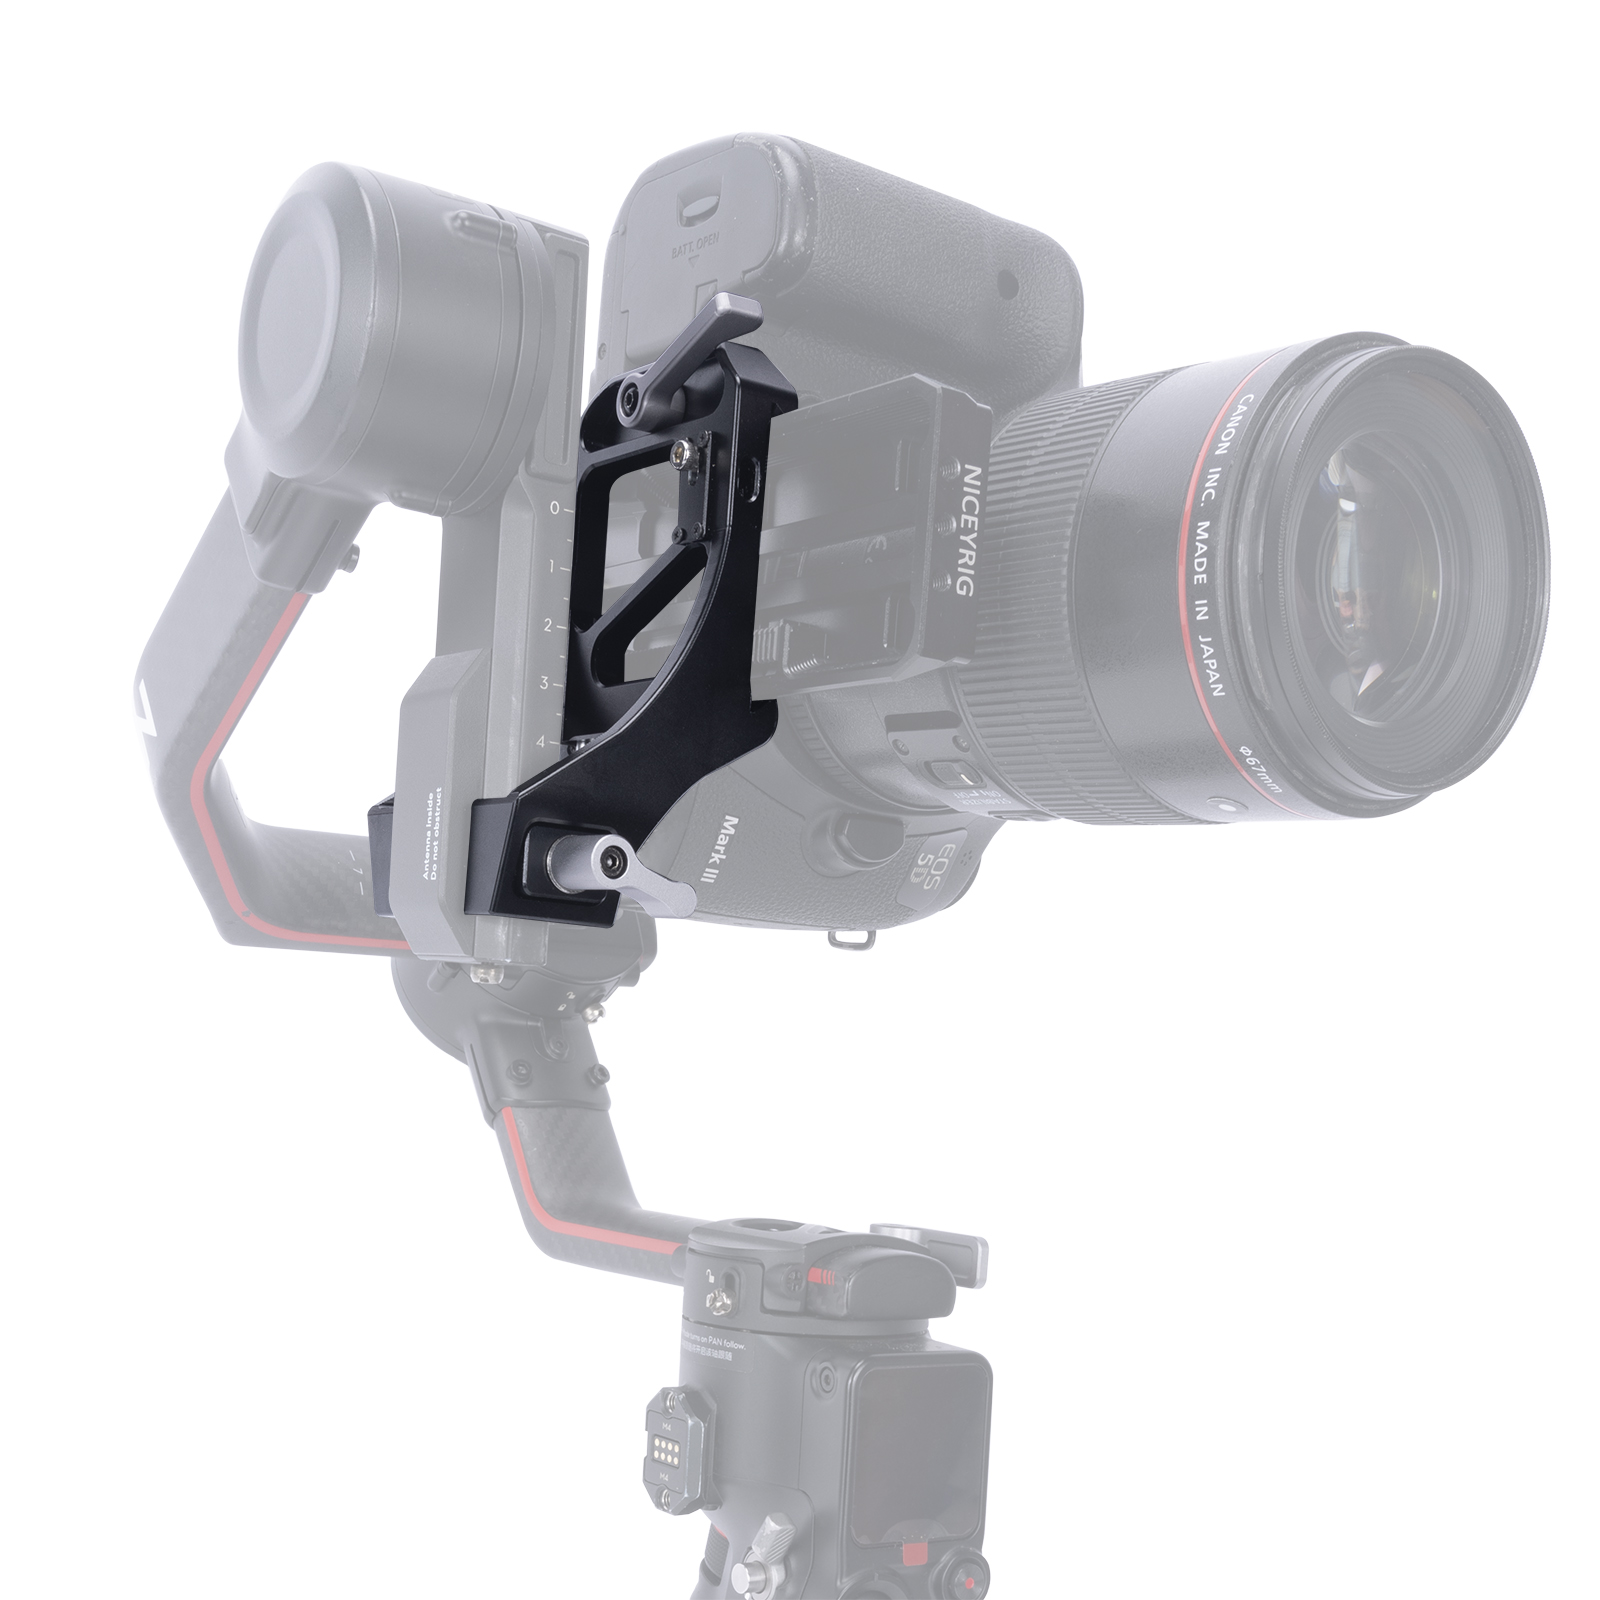 Niceyrig Vertical Shooting Adaptor Mount for DJI RoninSC/ RoninSC2 